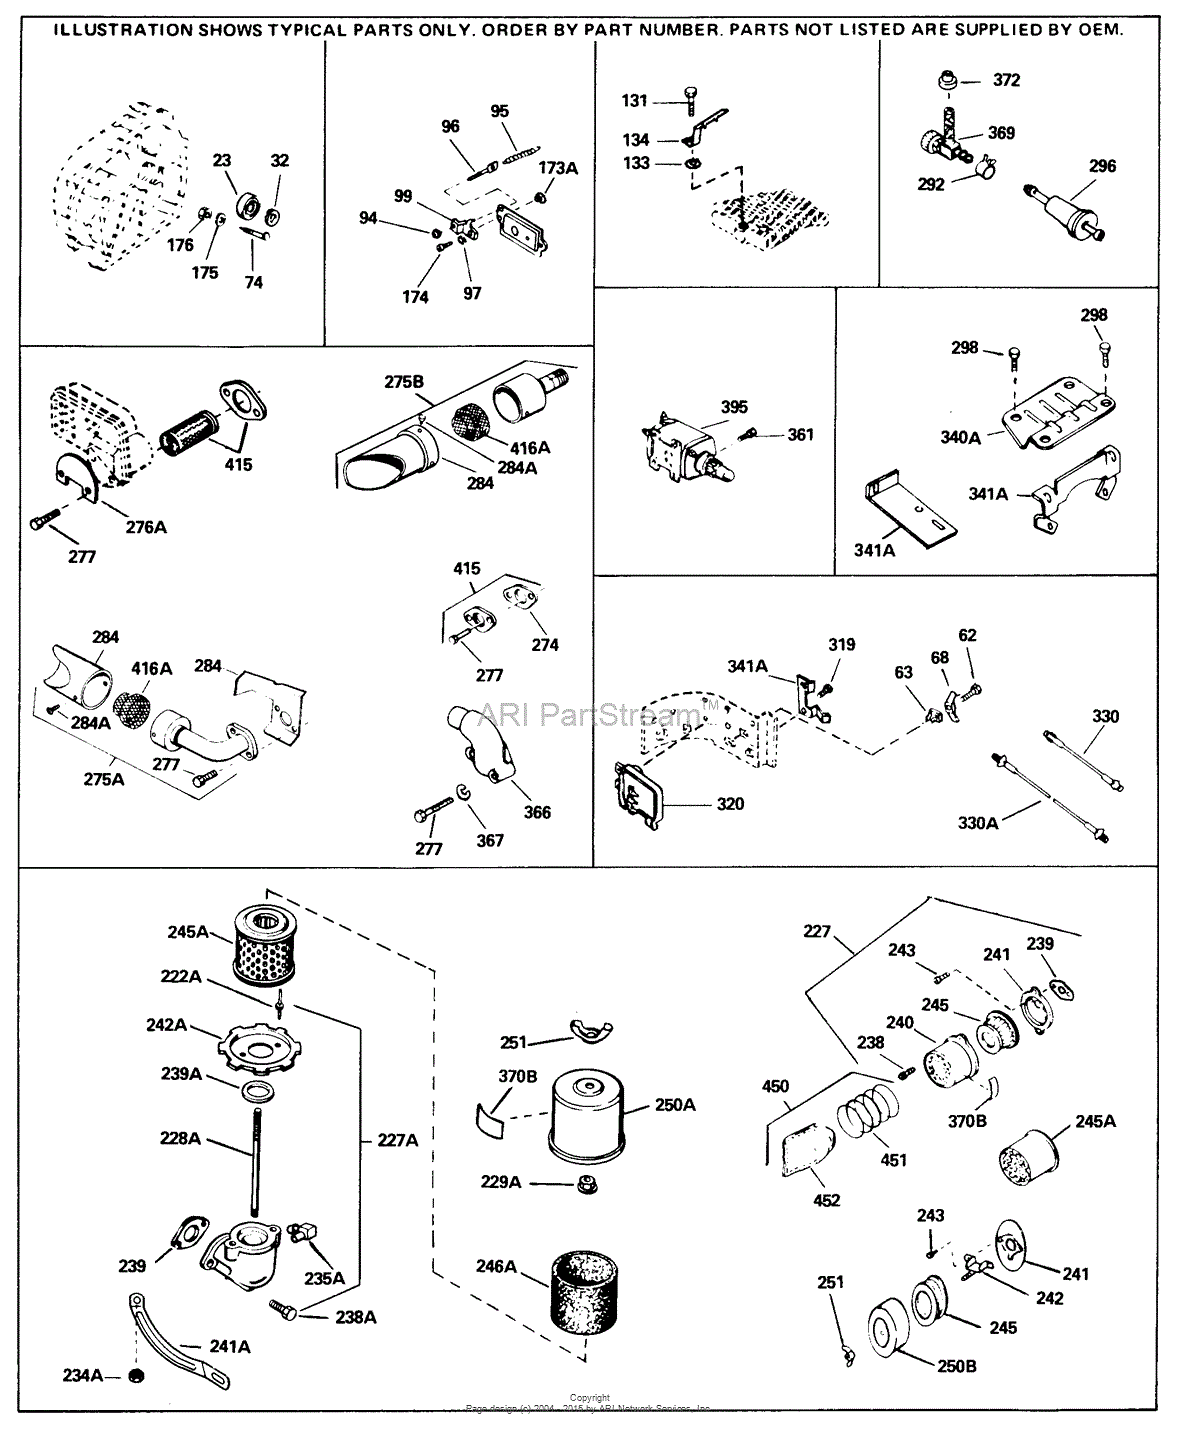 tecumseh hm80 parts diagram